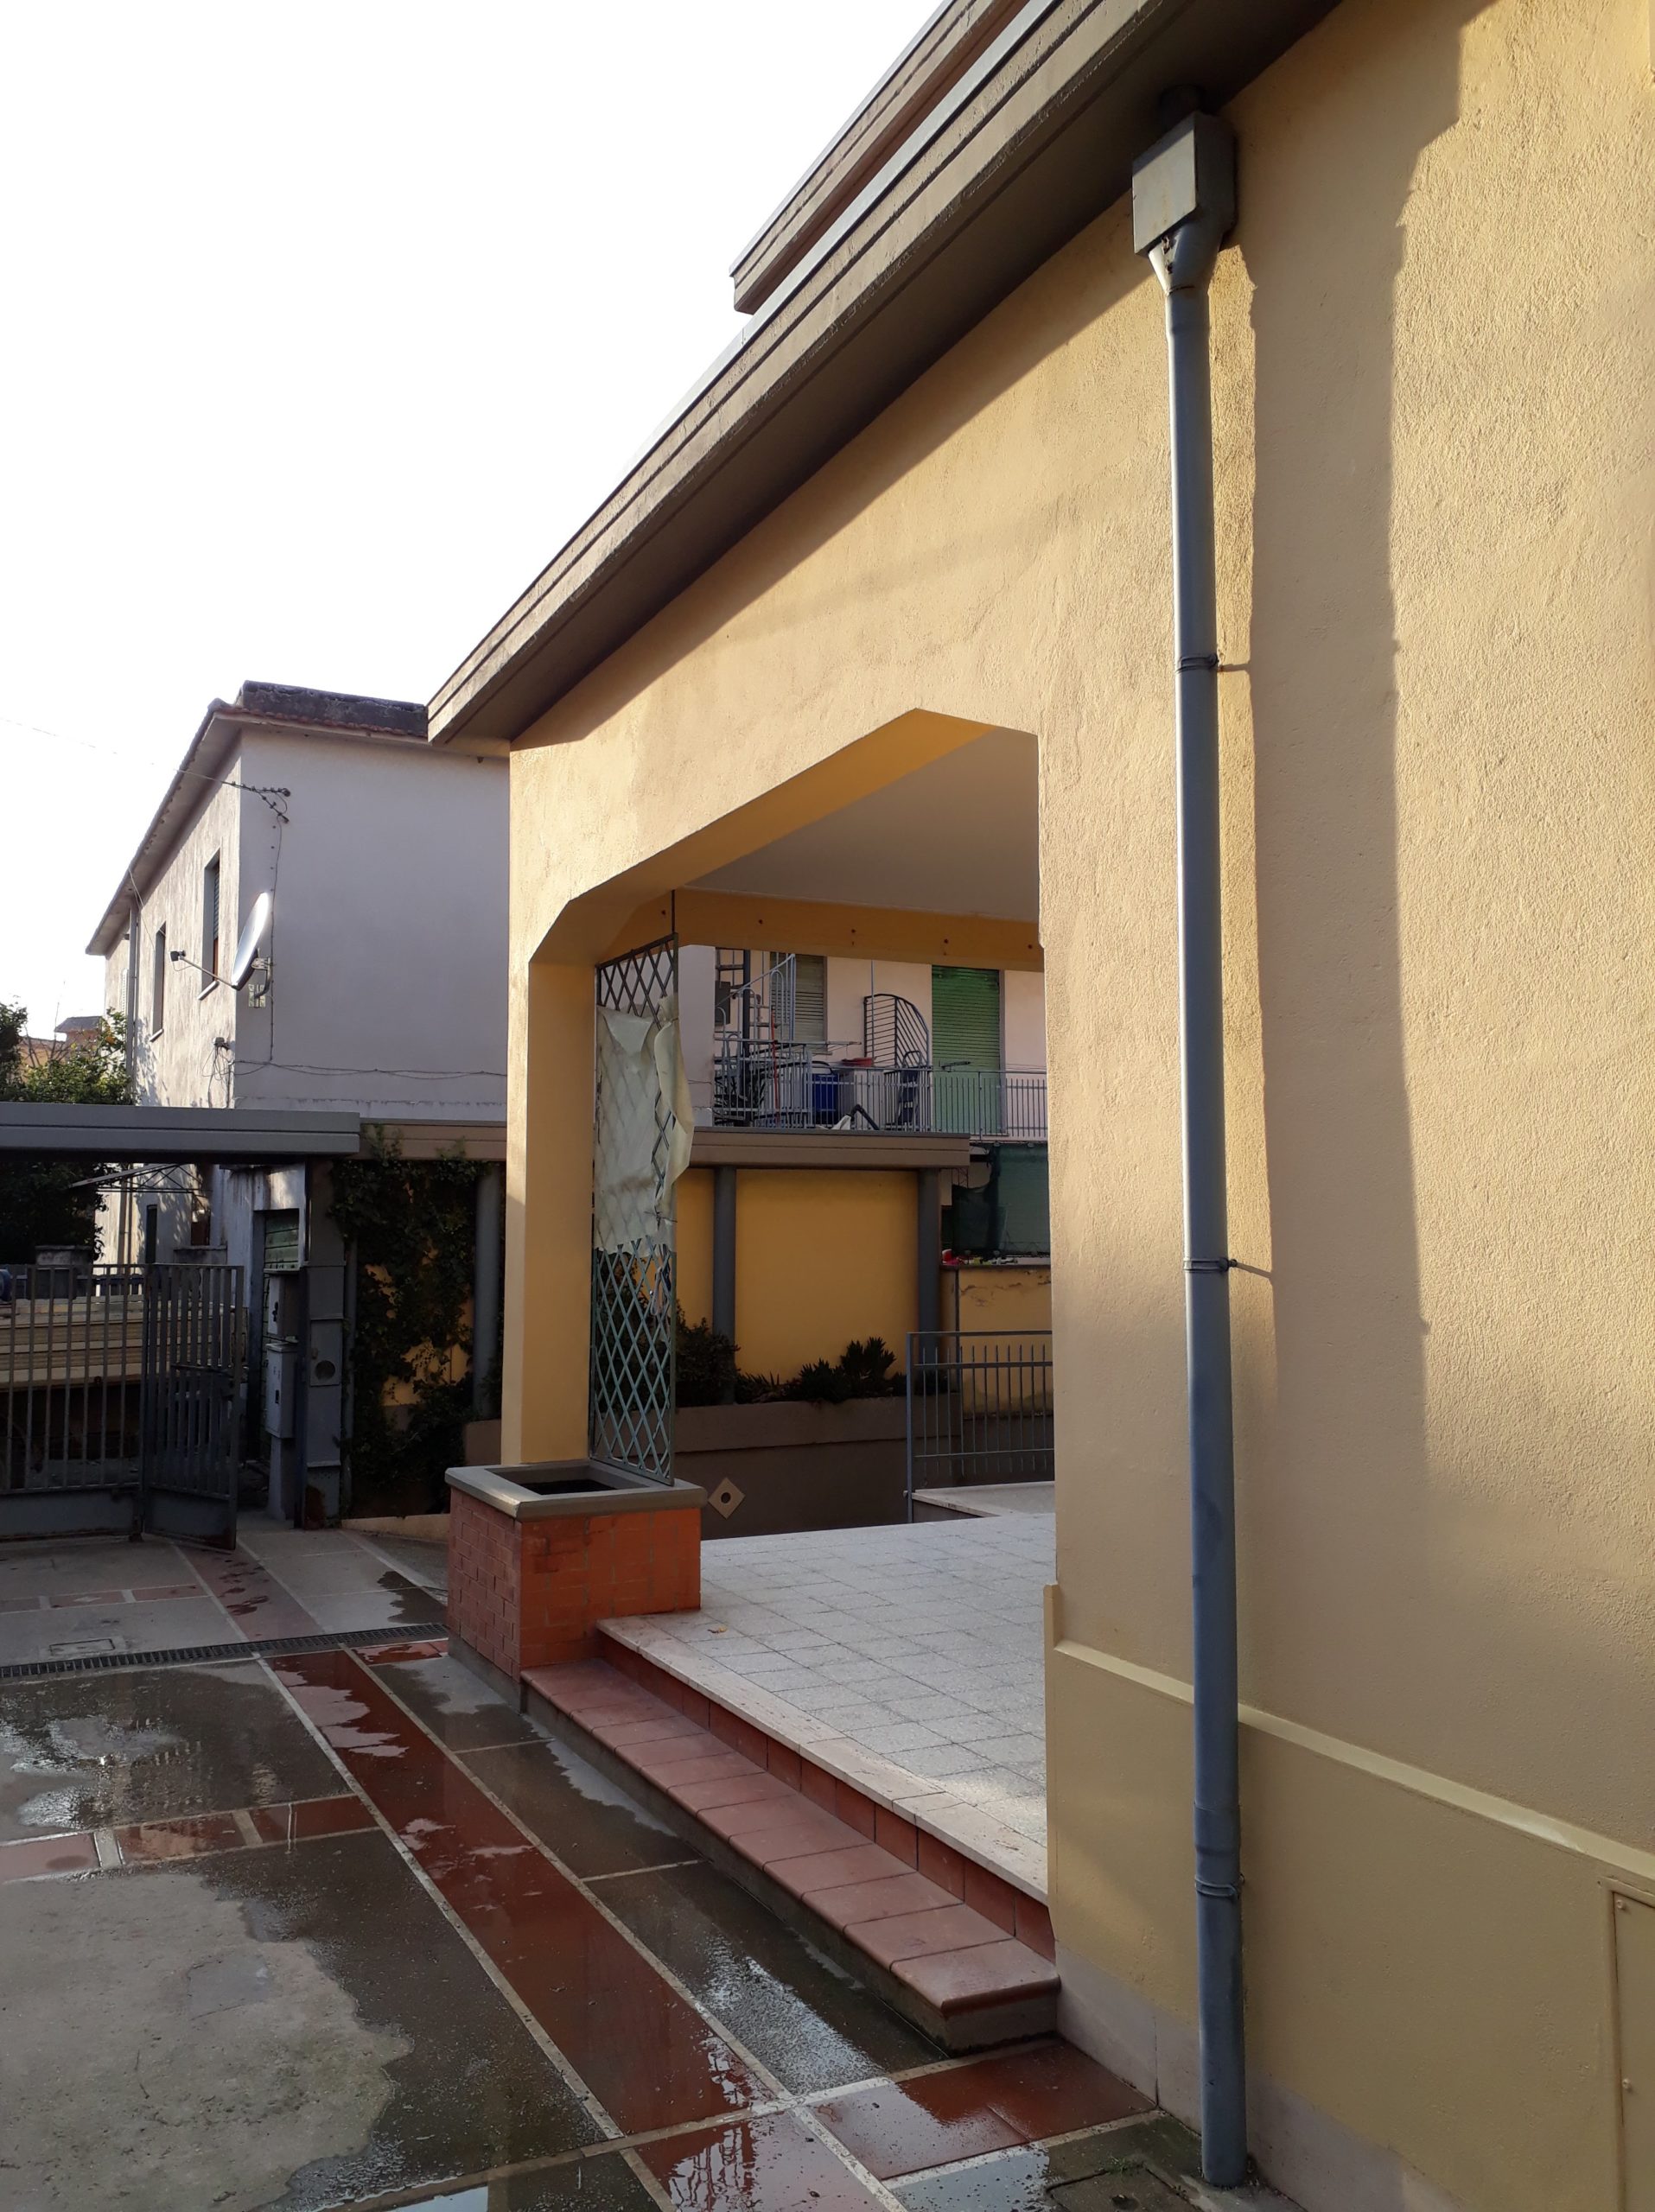 Interventi di ristrutturazione in facciata abitazione Aprilia